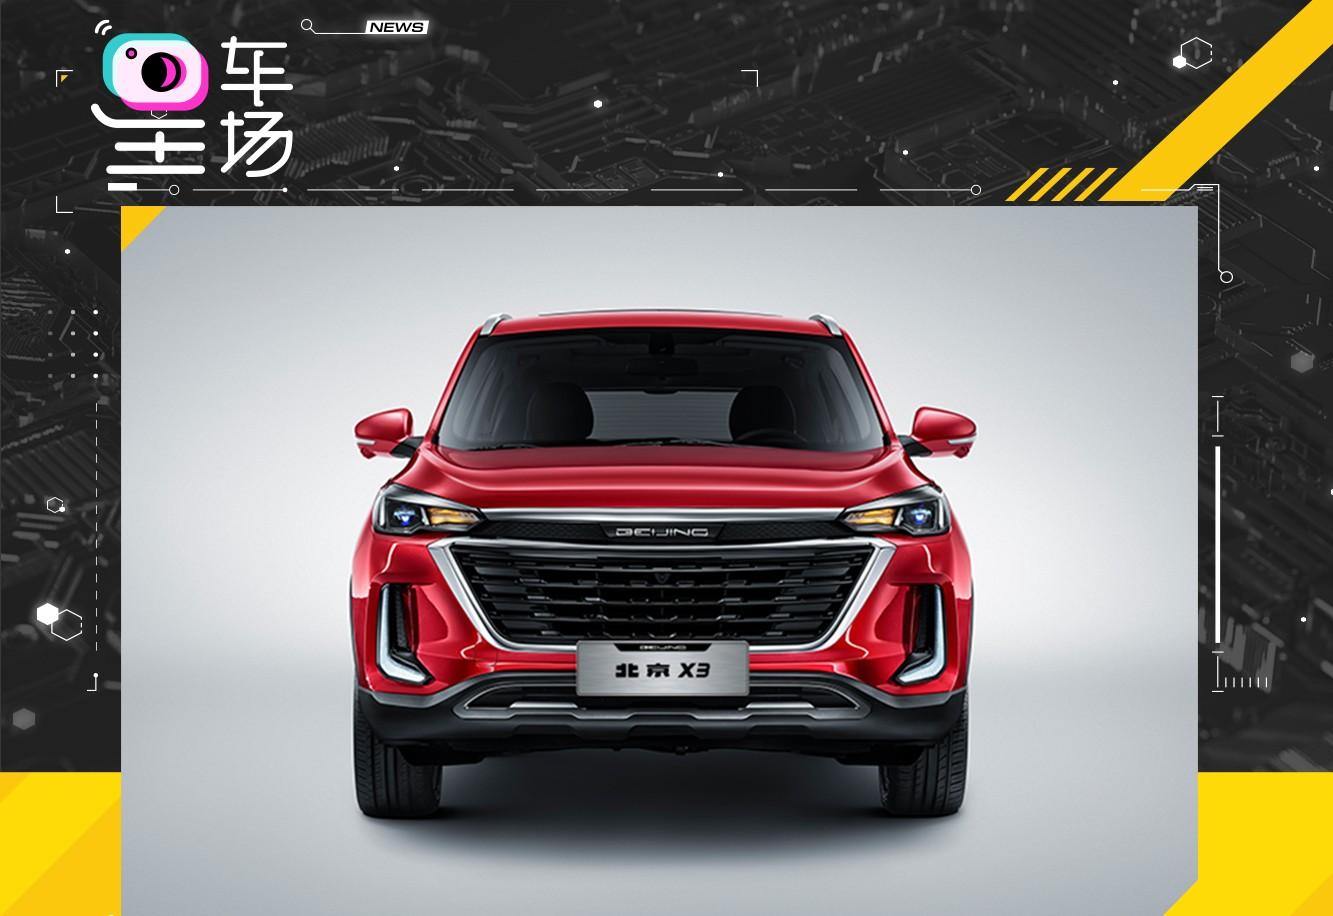 北京汽车推出全新小改款车型北京x3